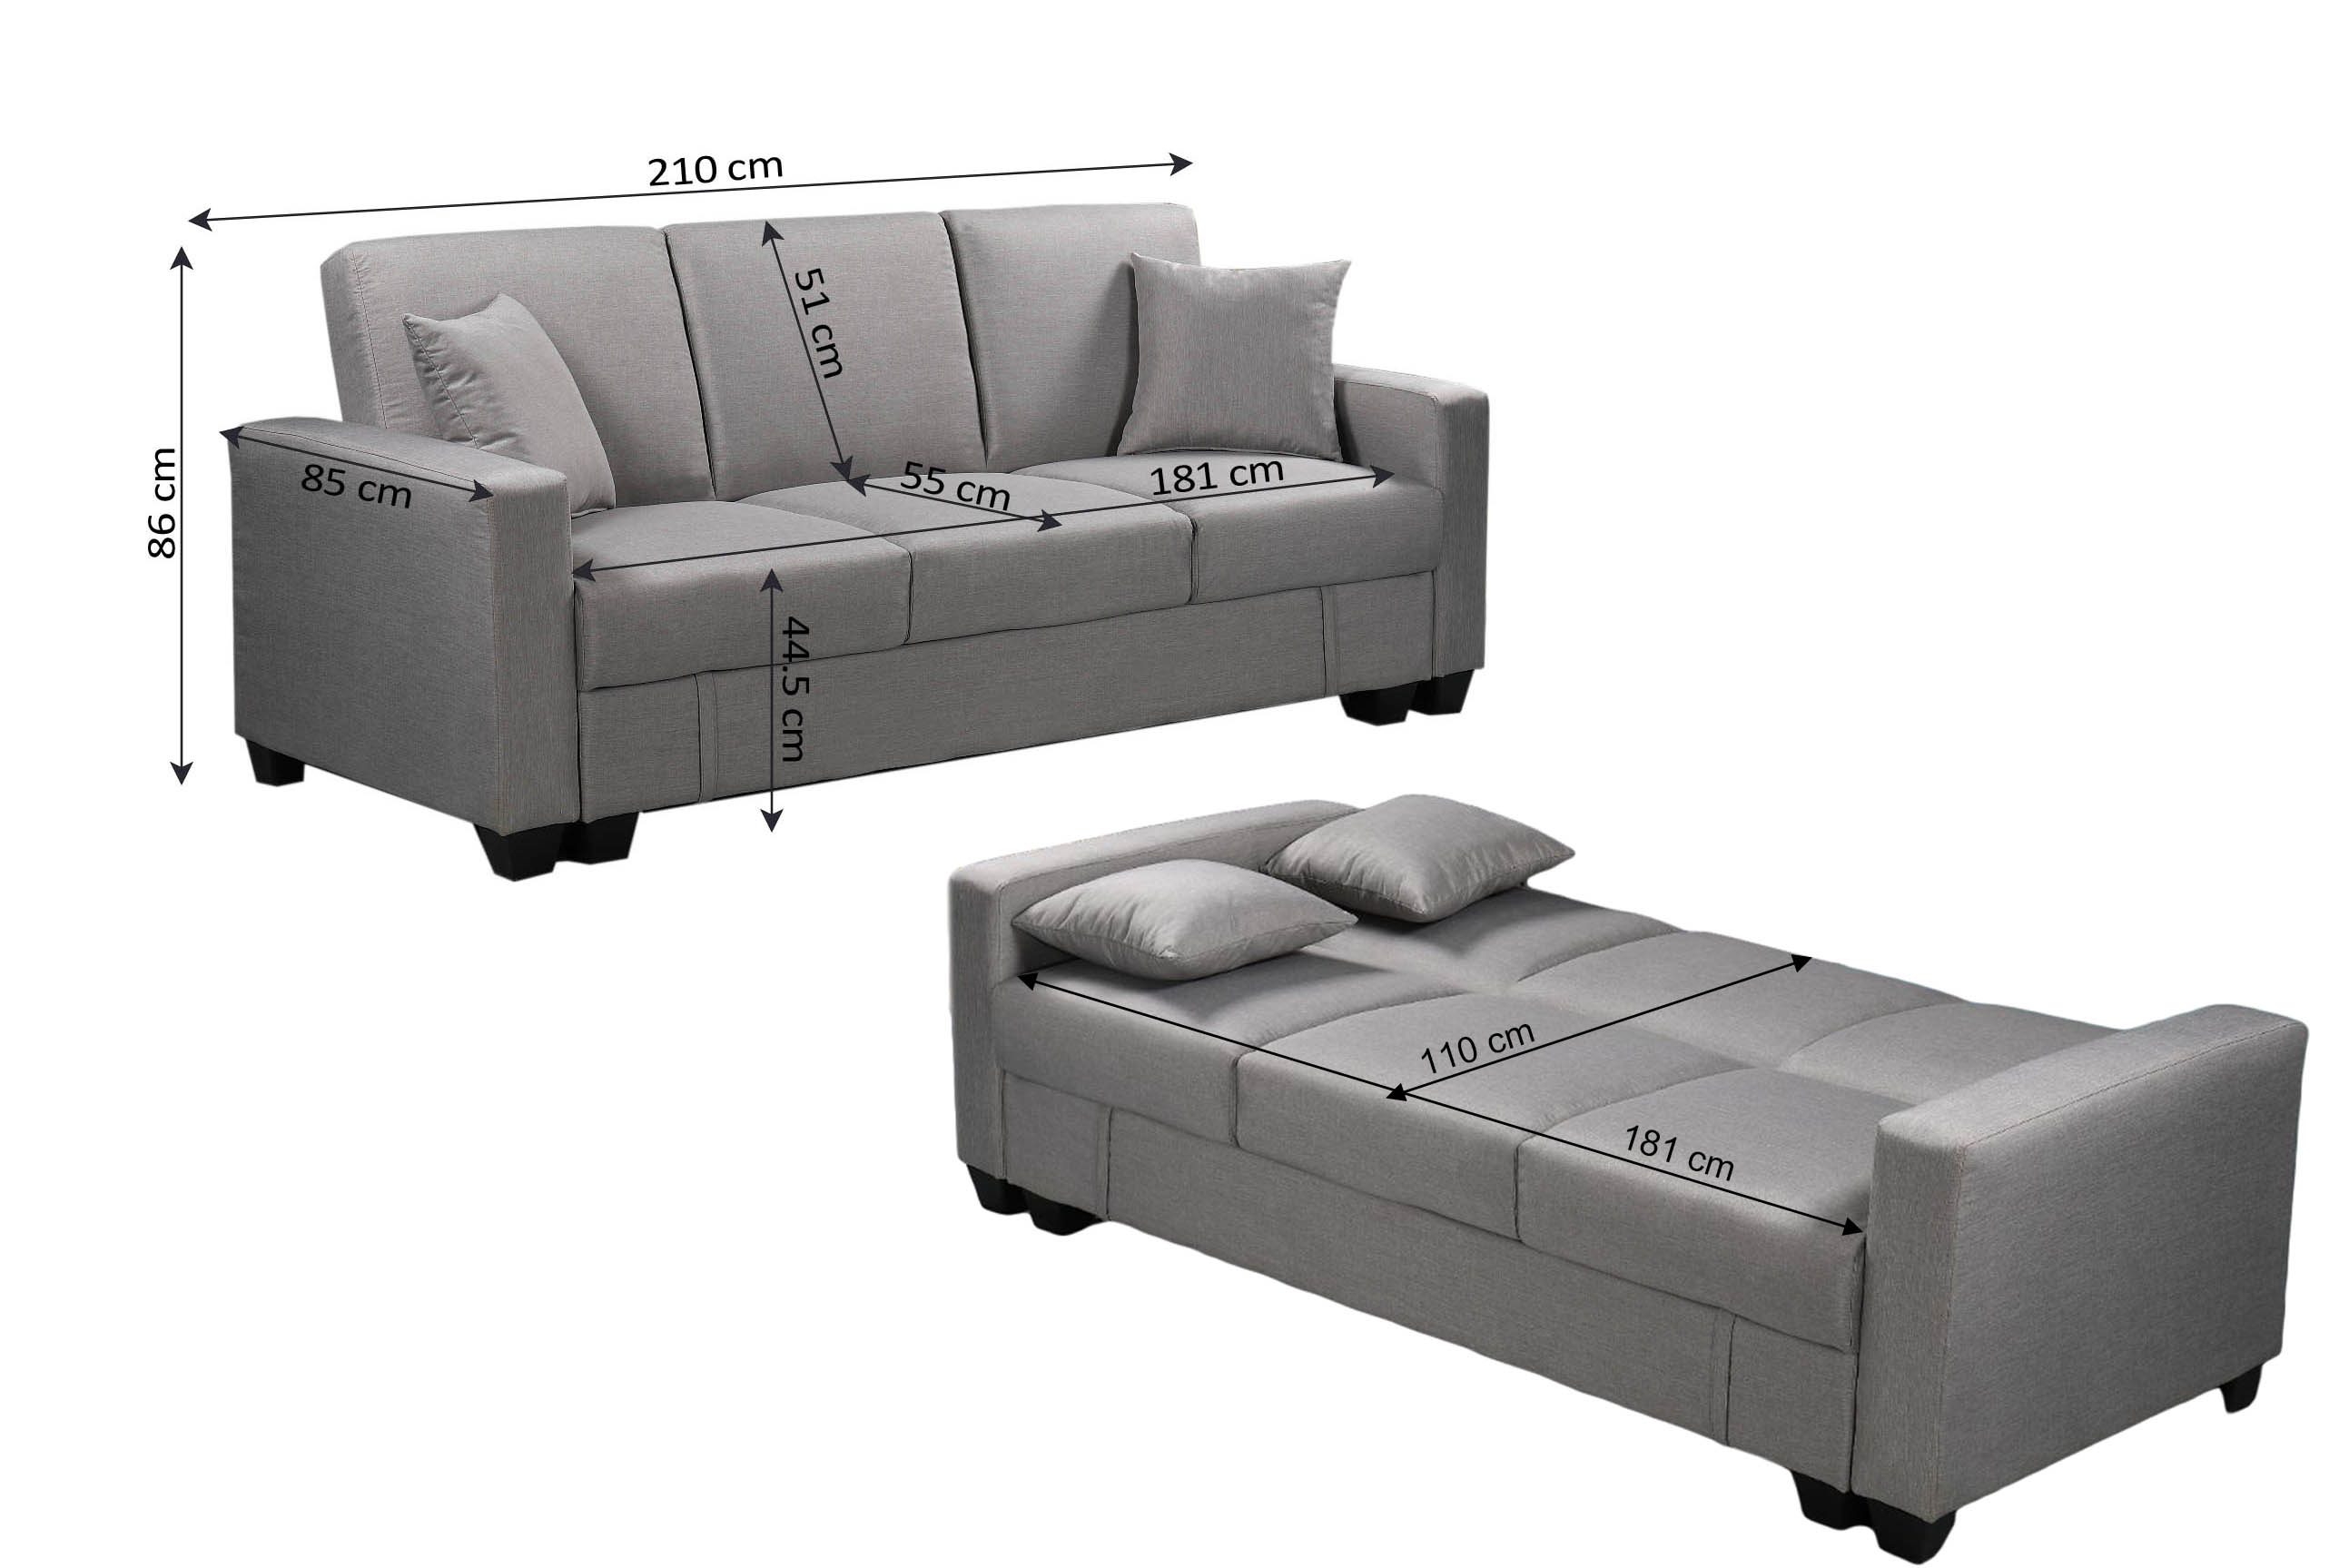 Sofa Cama Keyla con Arcon, 210cm